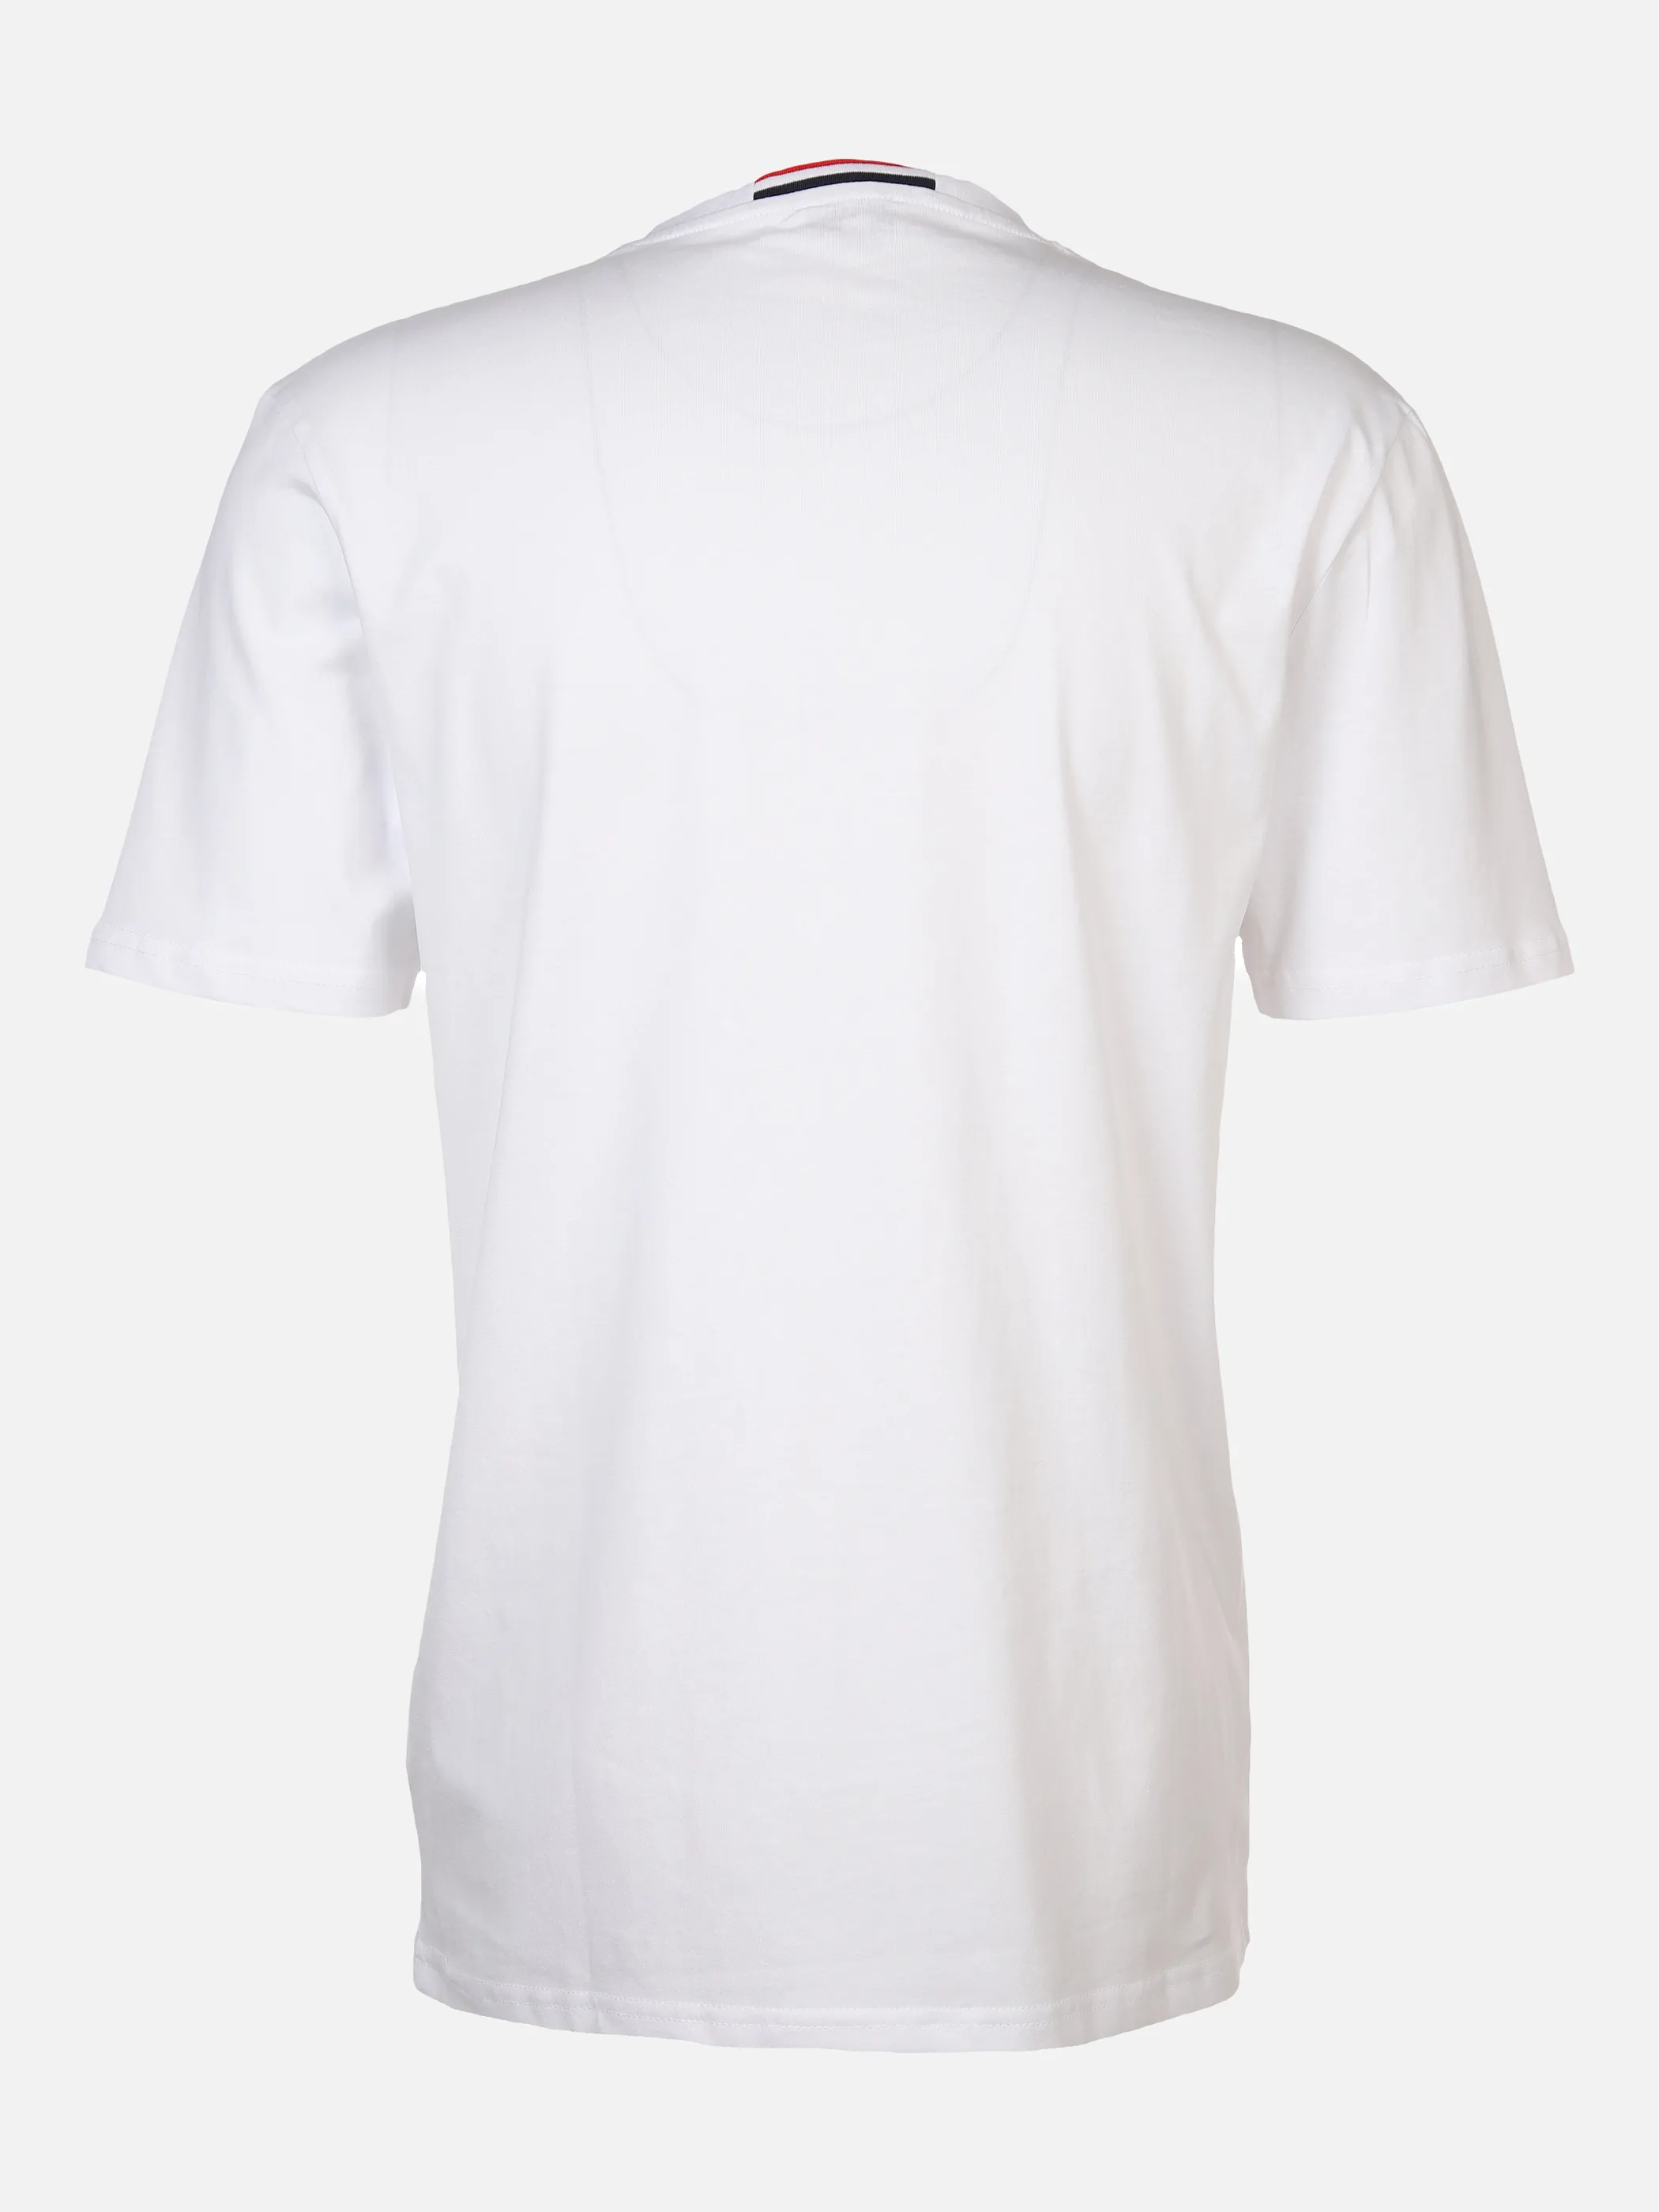 U.S. Polo Assn. He. T-Shirt 1/2 Arm Logostickerei Weiß 882065 WHITE 2